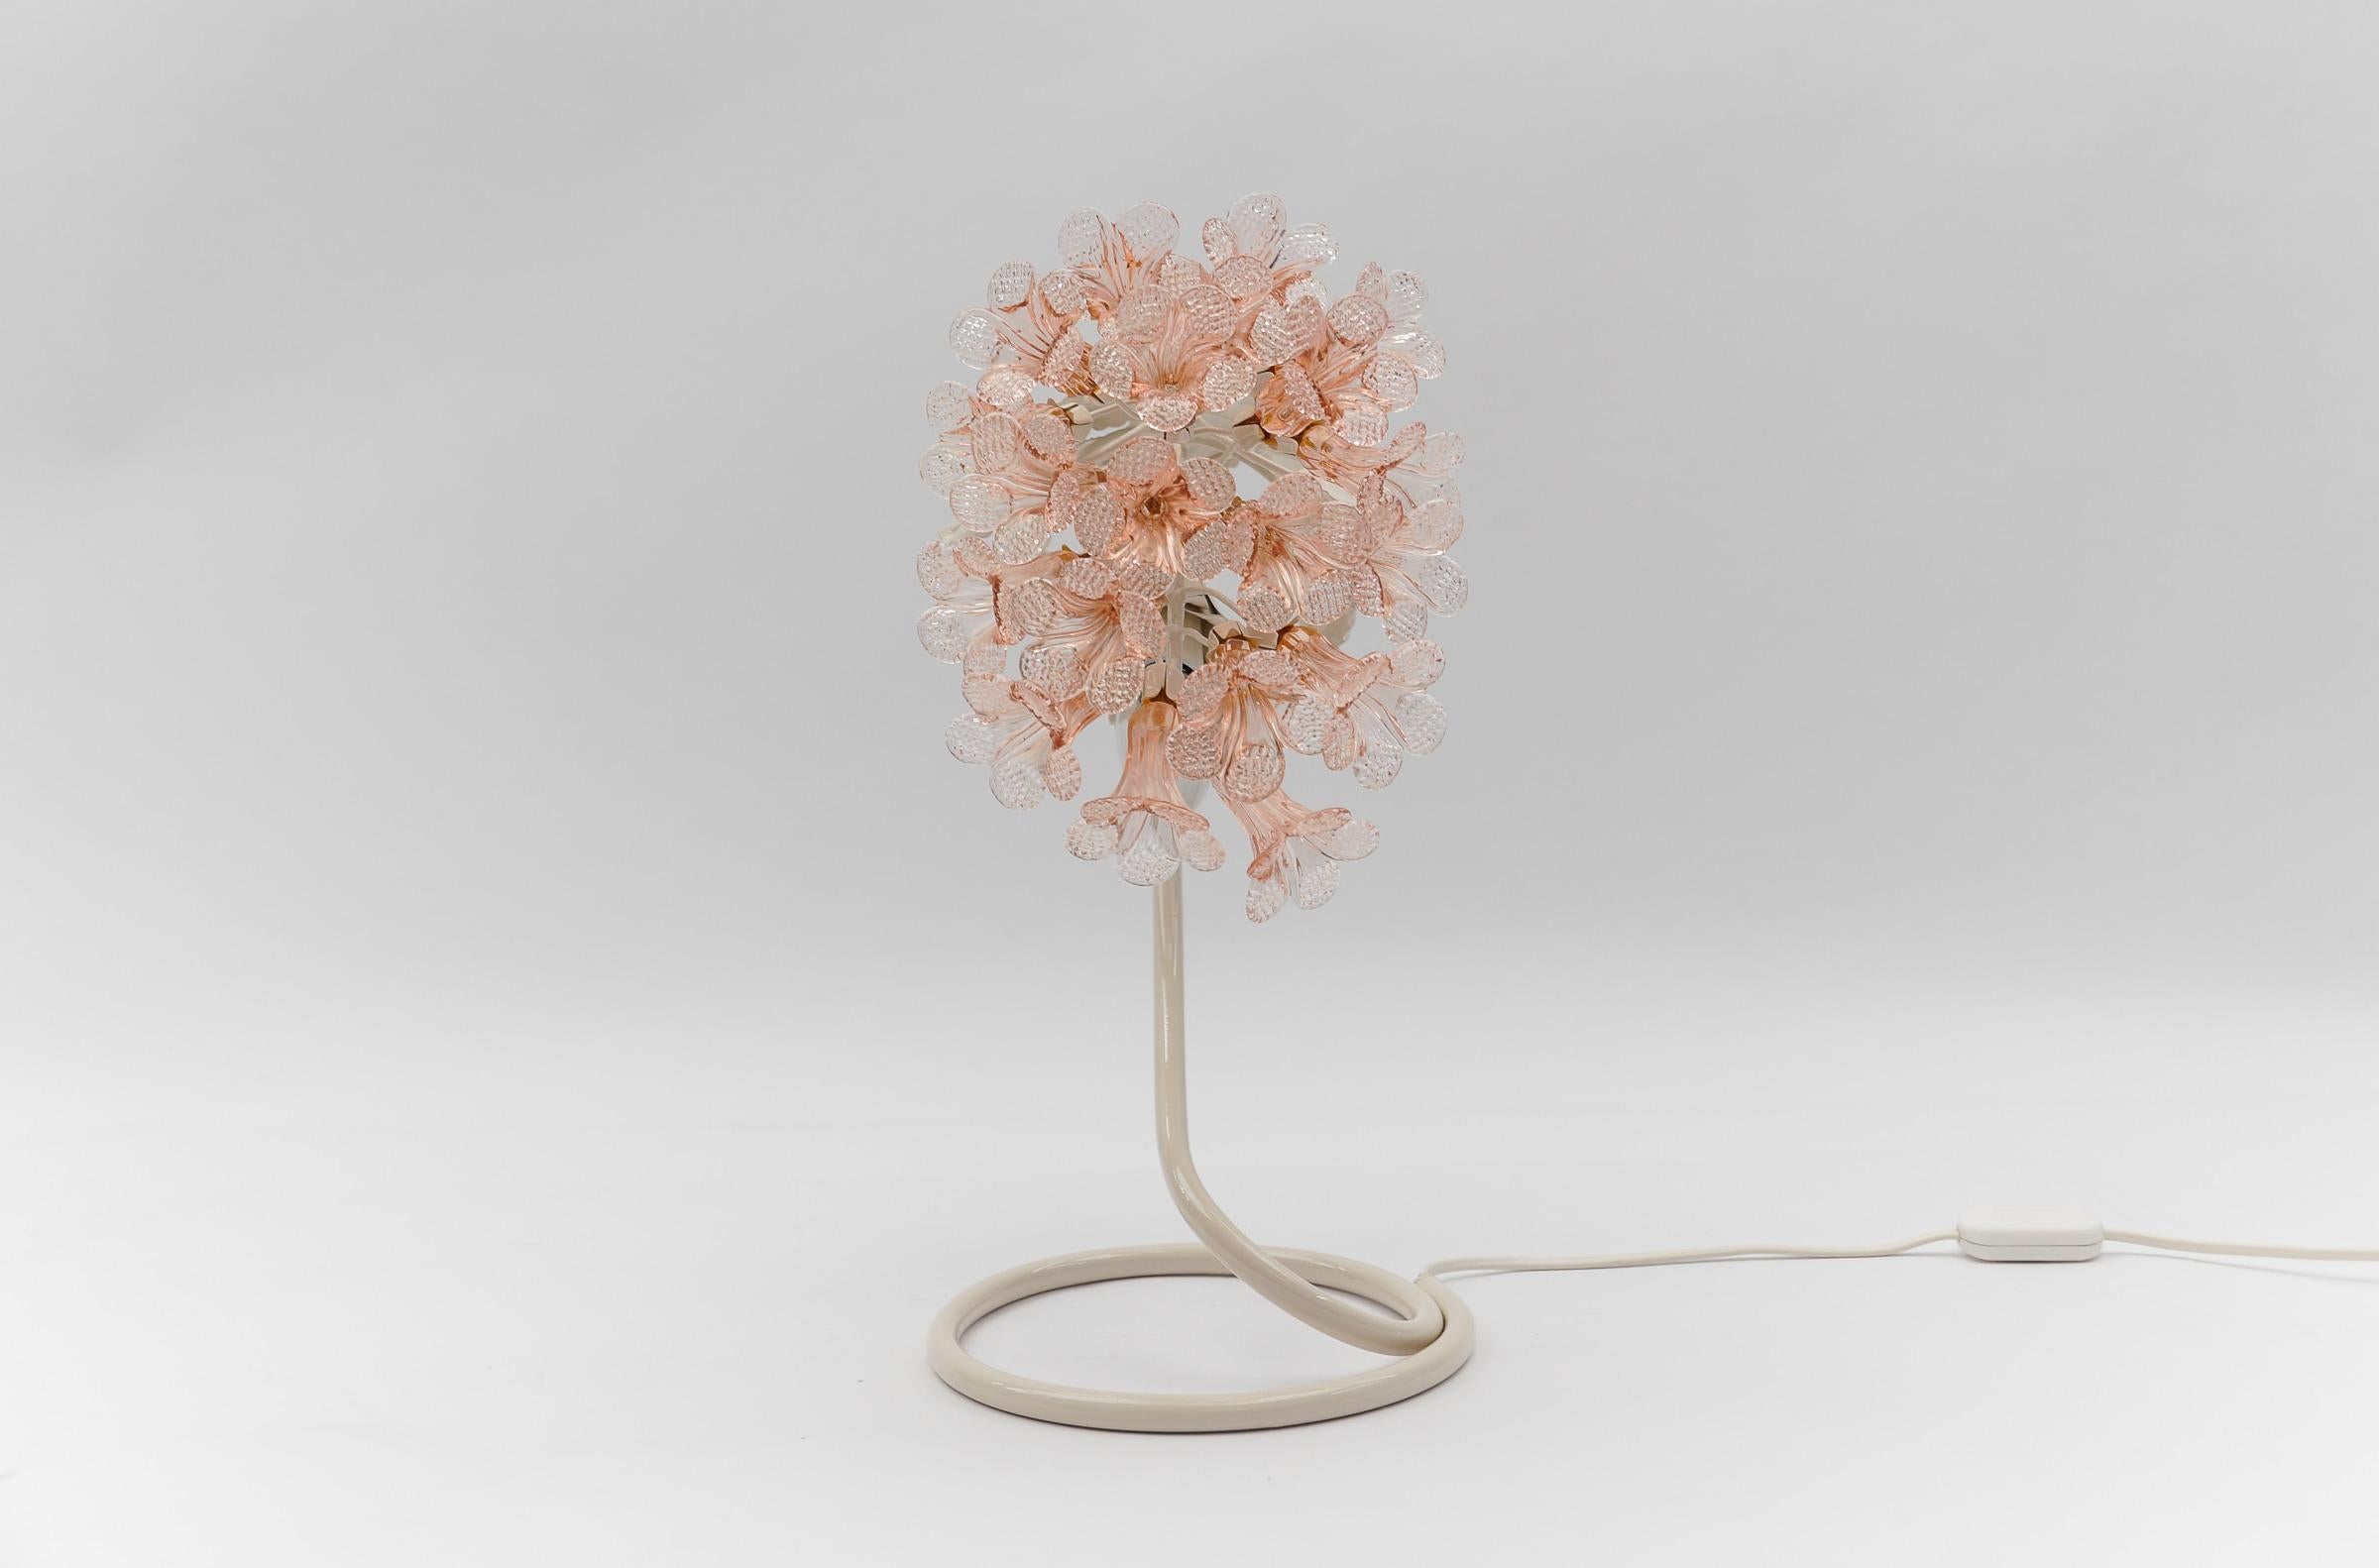 Lampe de table moderne italienne en fleurs roses en verre de Murano, Italie des années 1960.

Dimension
Hauteur : 41 cm (16,14 in)
Largeur : 8.26 in (21 cm)
Profondeur : 11,82 in (30 cm)

La lampe nécessite une ampoule à vis Edison E14 / E15. Elle